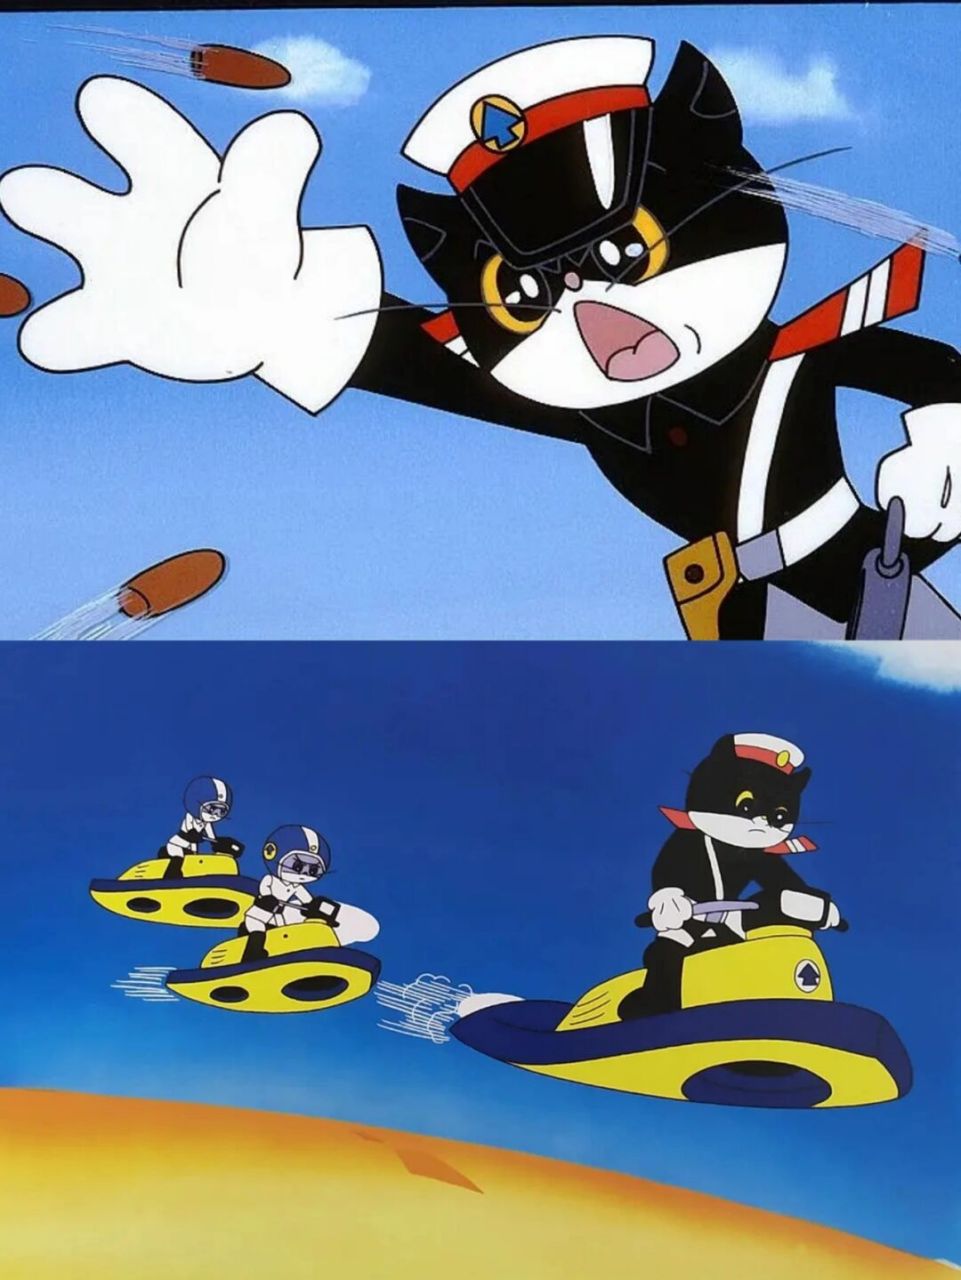 回忆100部童年动画片(25)《黑猫警长》 《黑猫警长》大家都看过吧